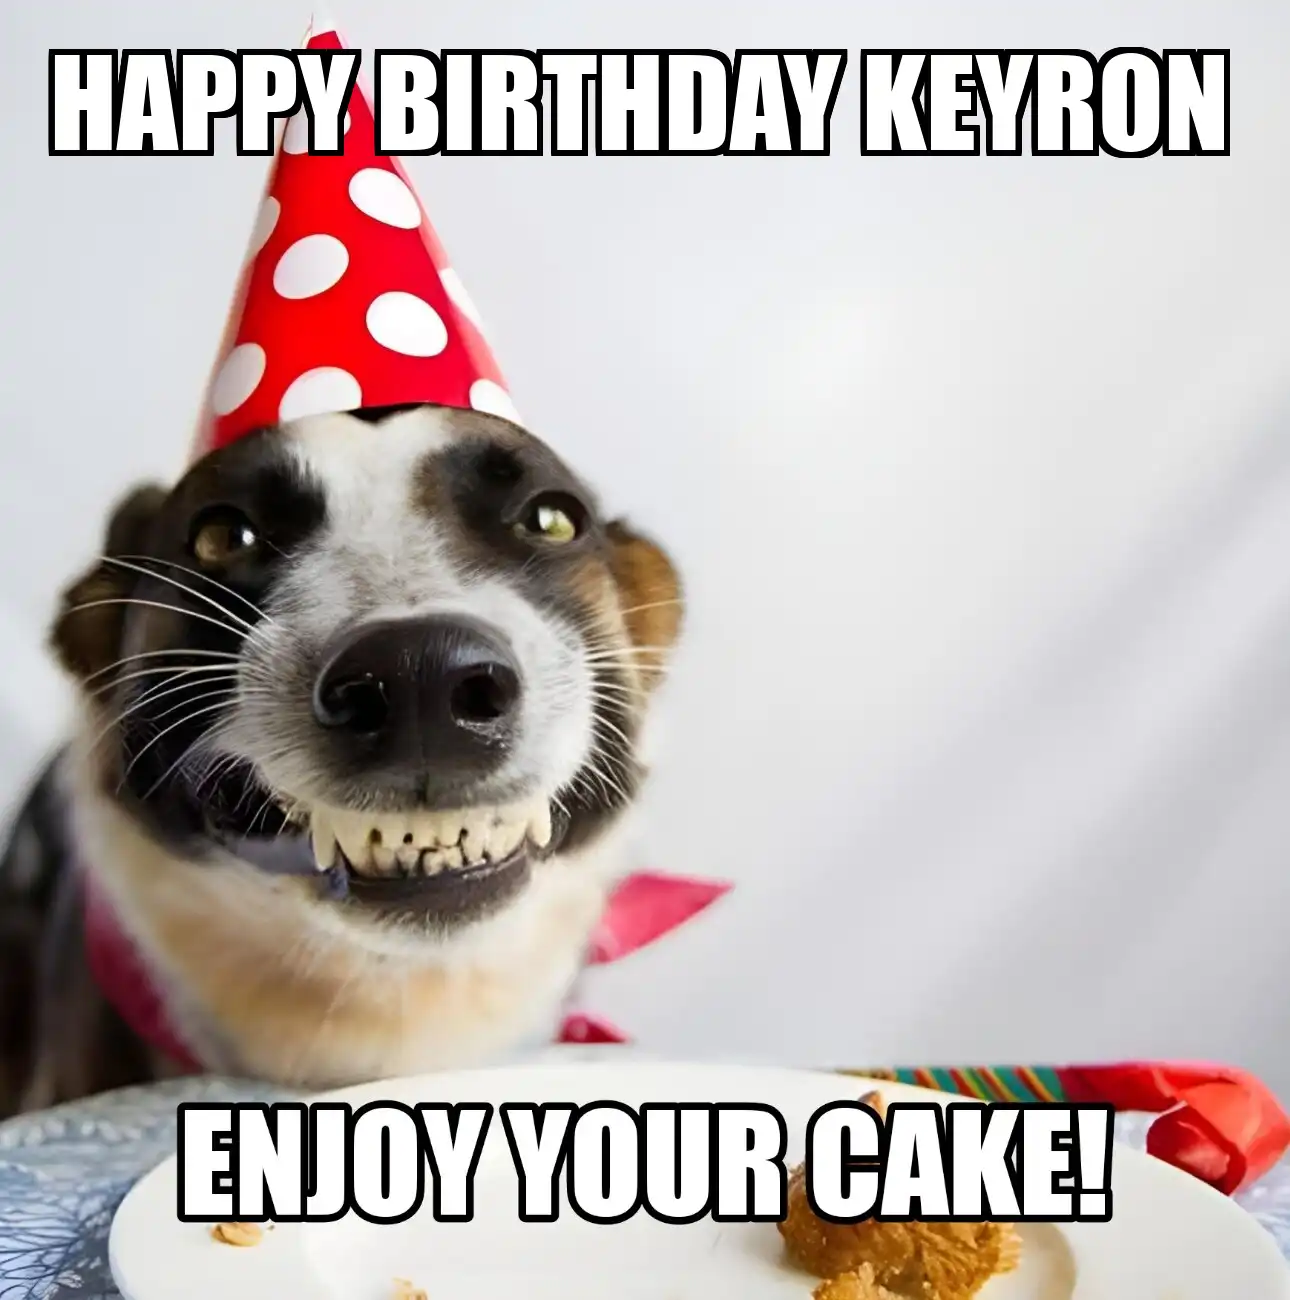 Happy Birthday Keyron Enjoy Your Cake Dog Meme